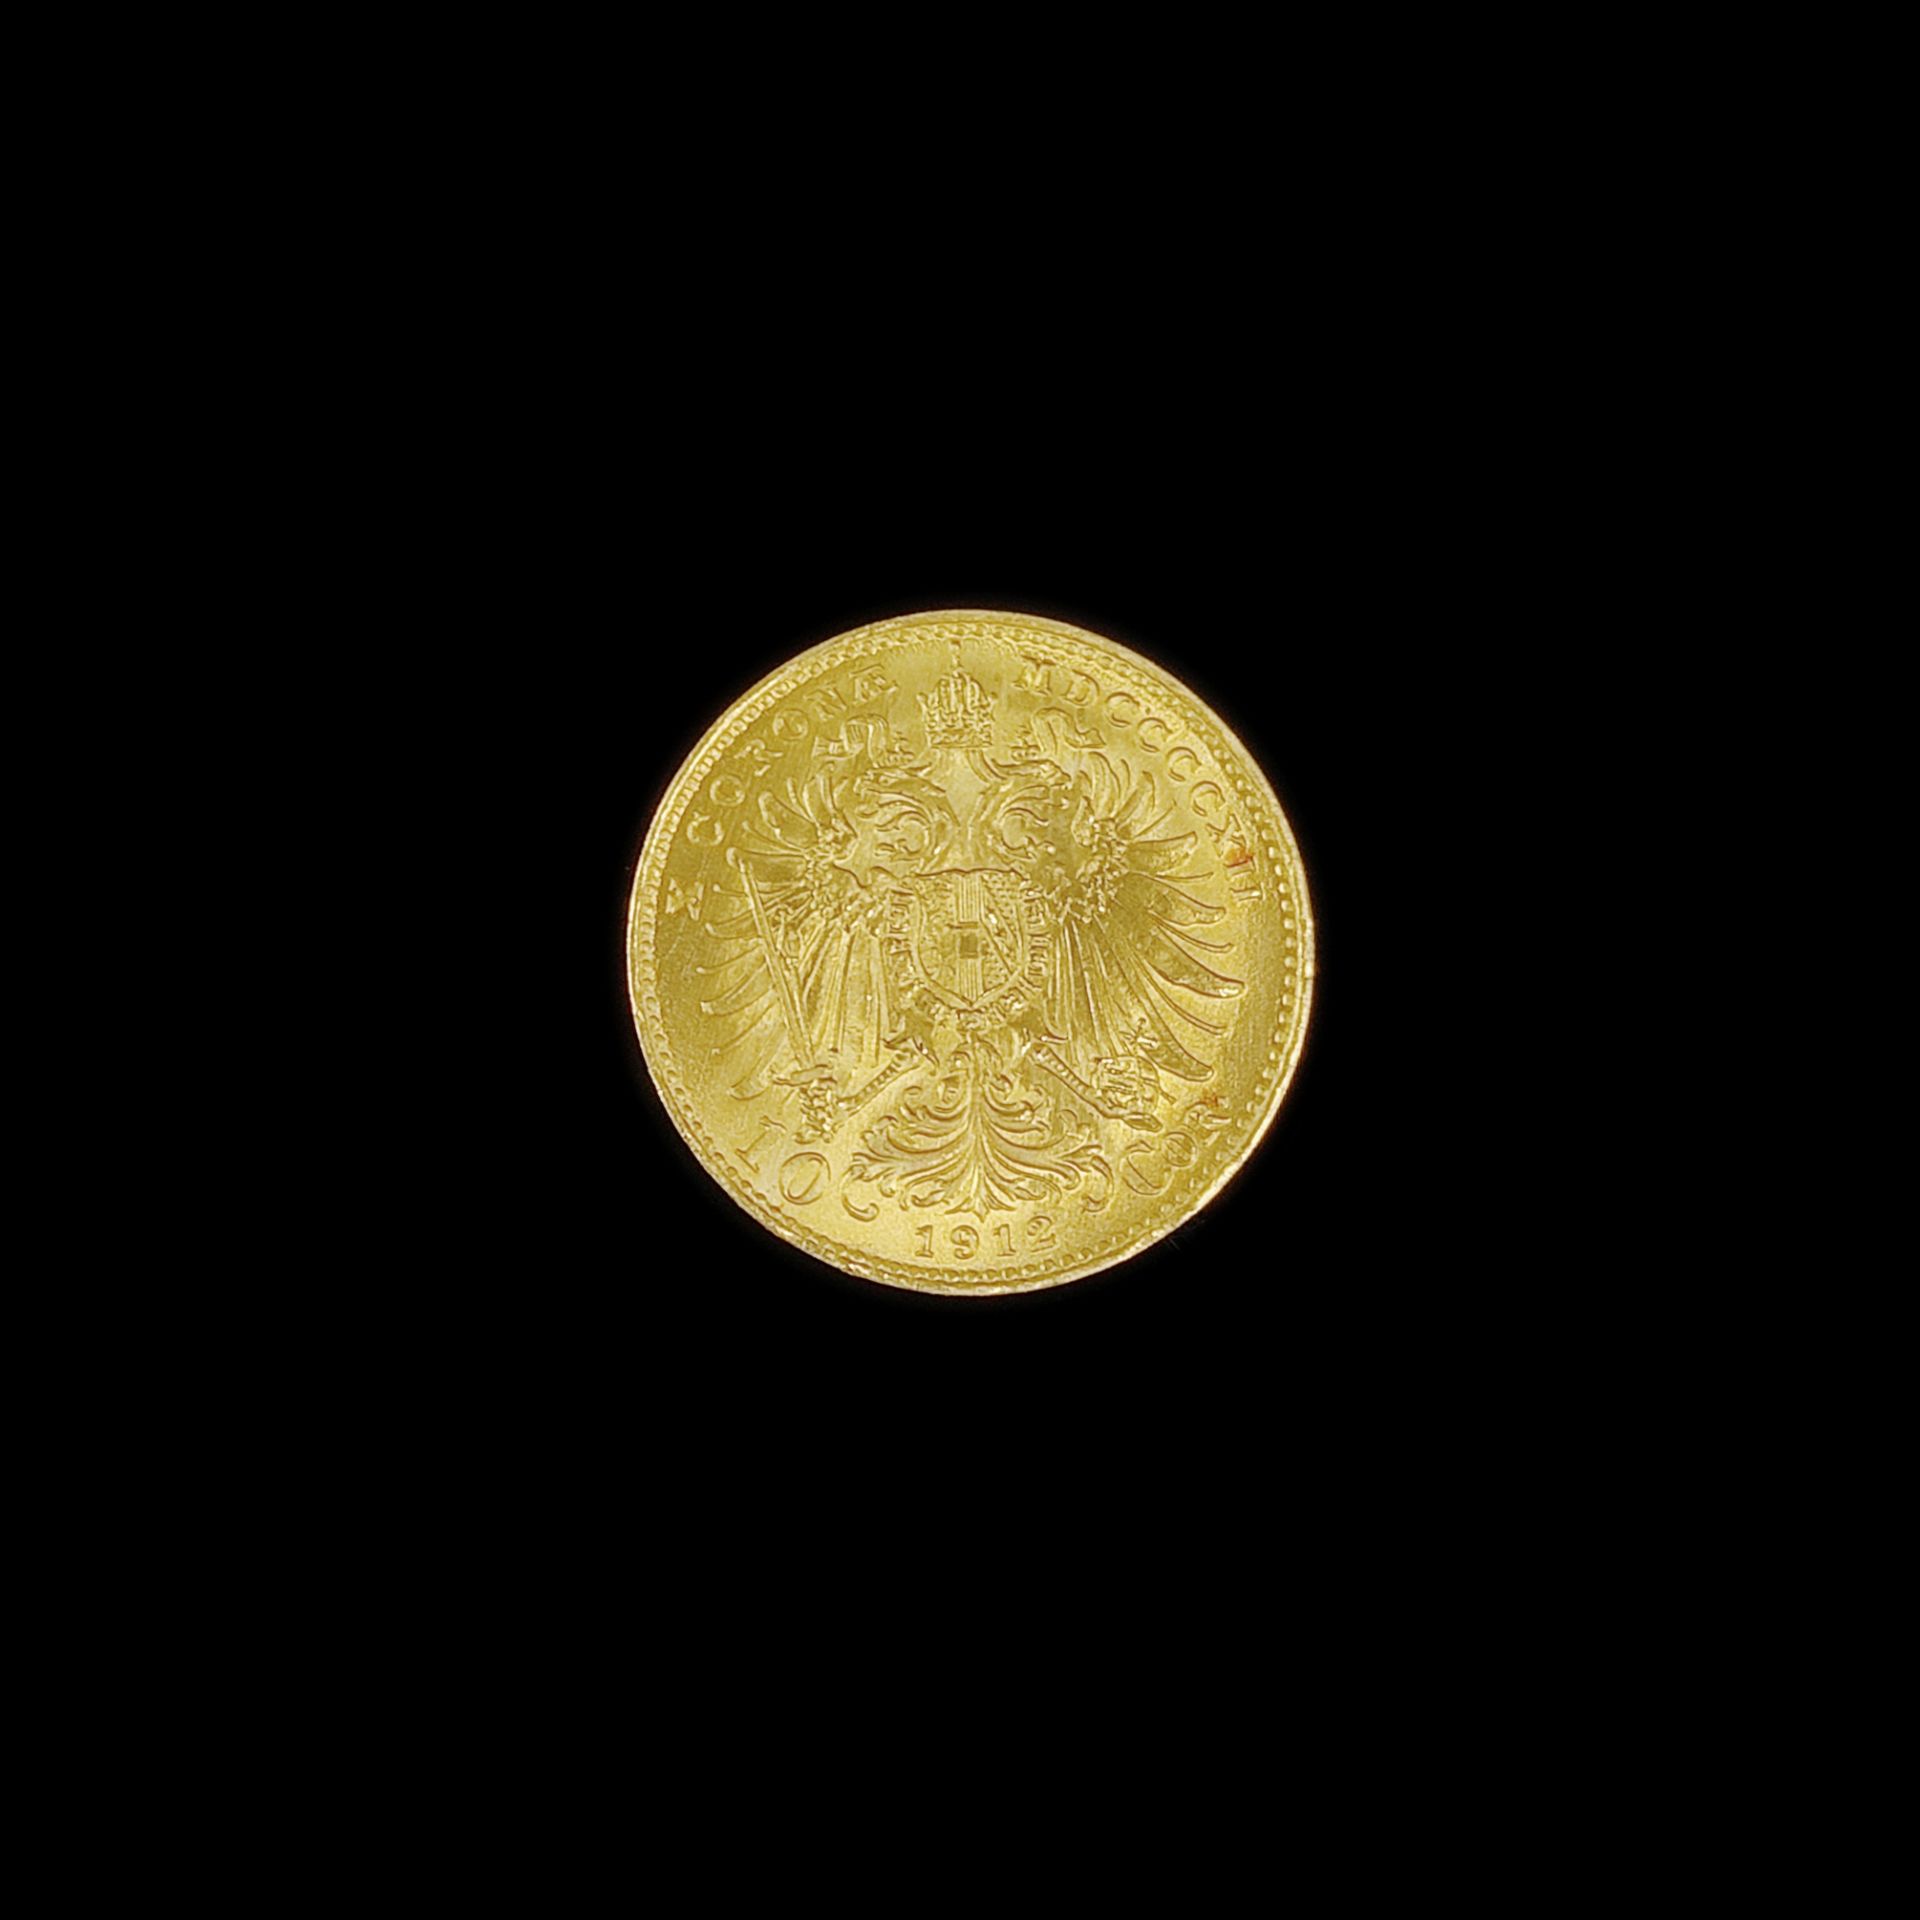 Goldmünze, 10 Kronen, Franz Joseph I., Österreich-Ungarn 1912, 900 Gelbgold, 3,38g, Durchmesser 18, - Bild 2 aus 2